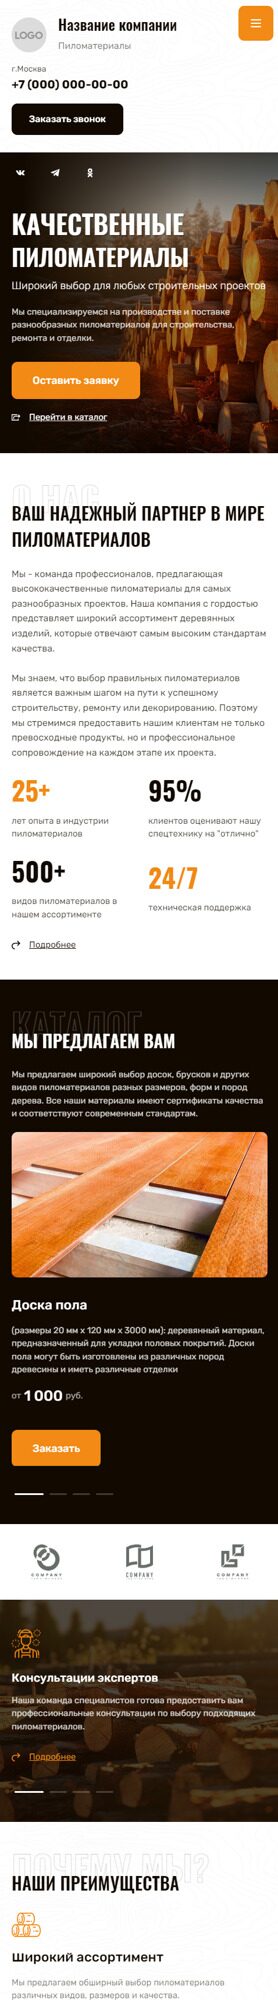 Готовый Сайт-Бизнес № 5003265 - Пиломатериалы (Мобильная версия)